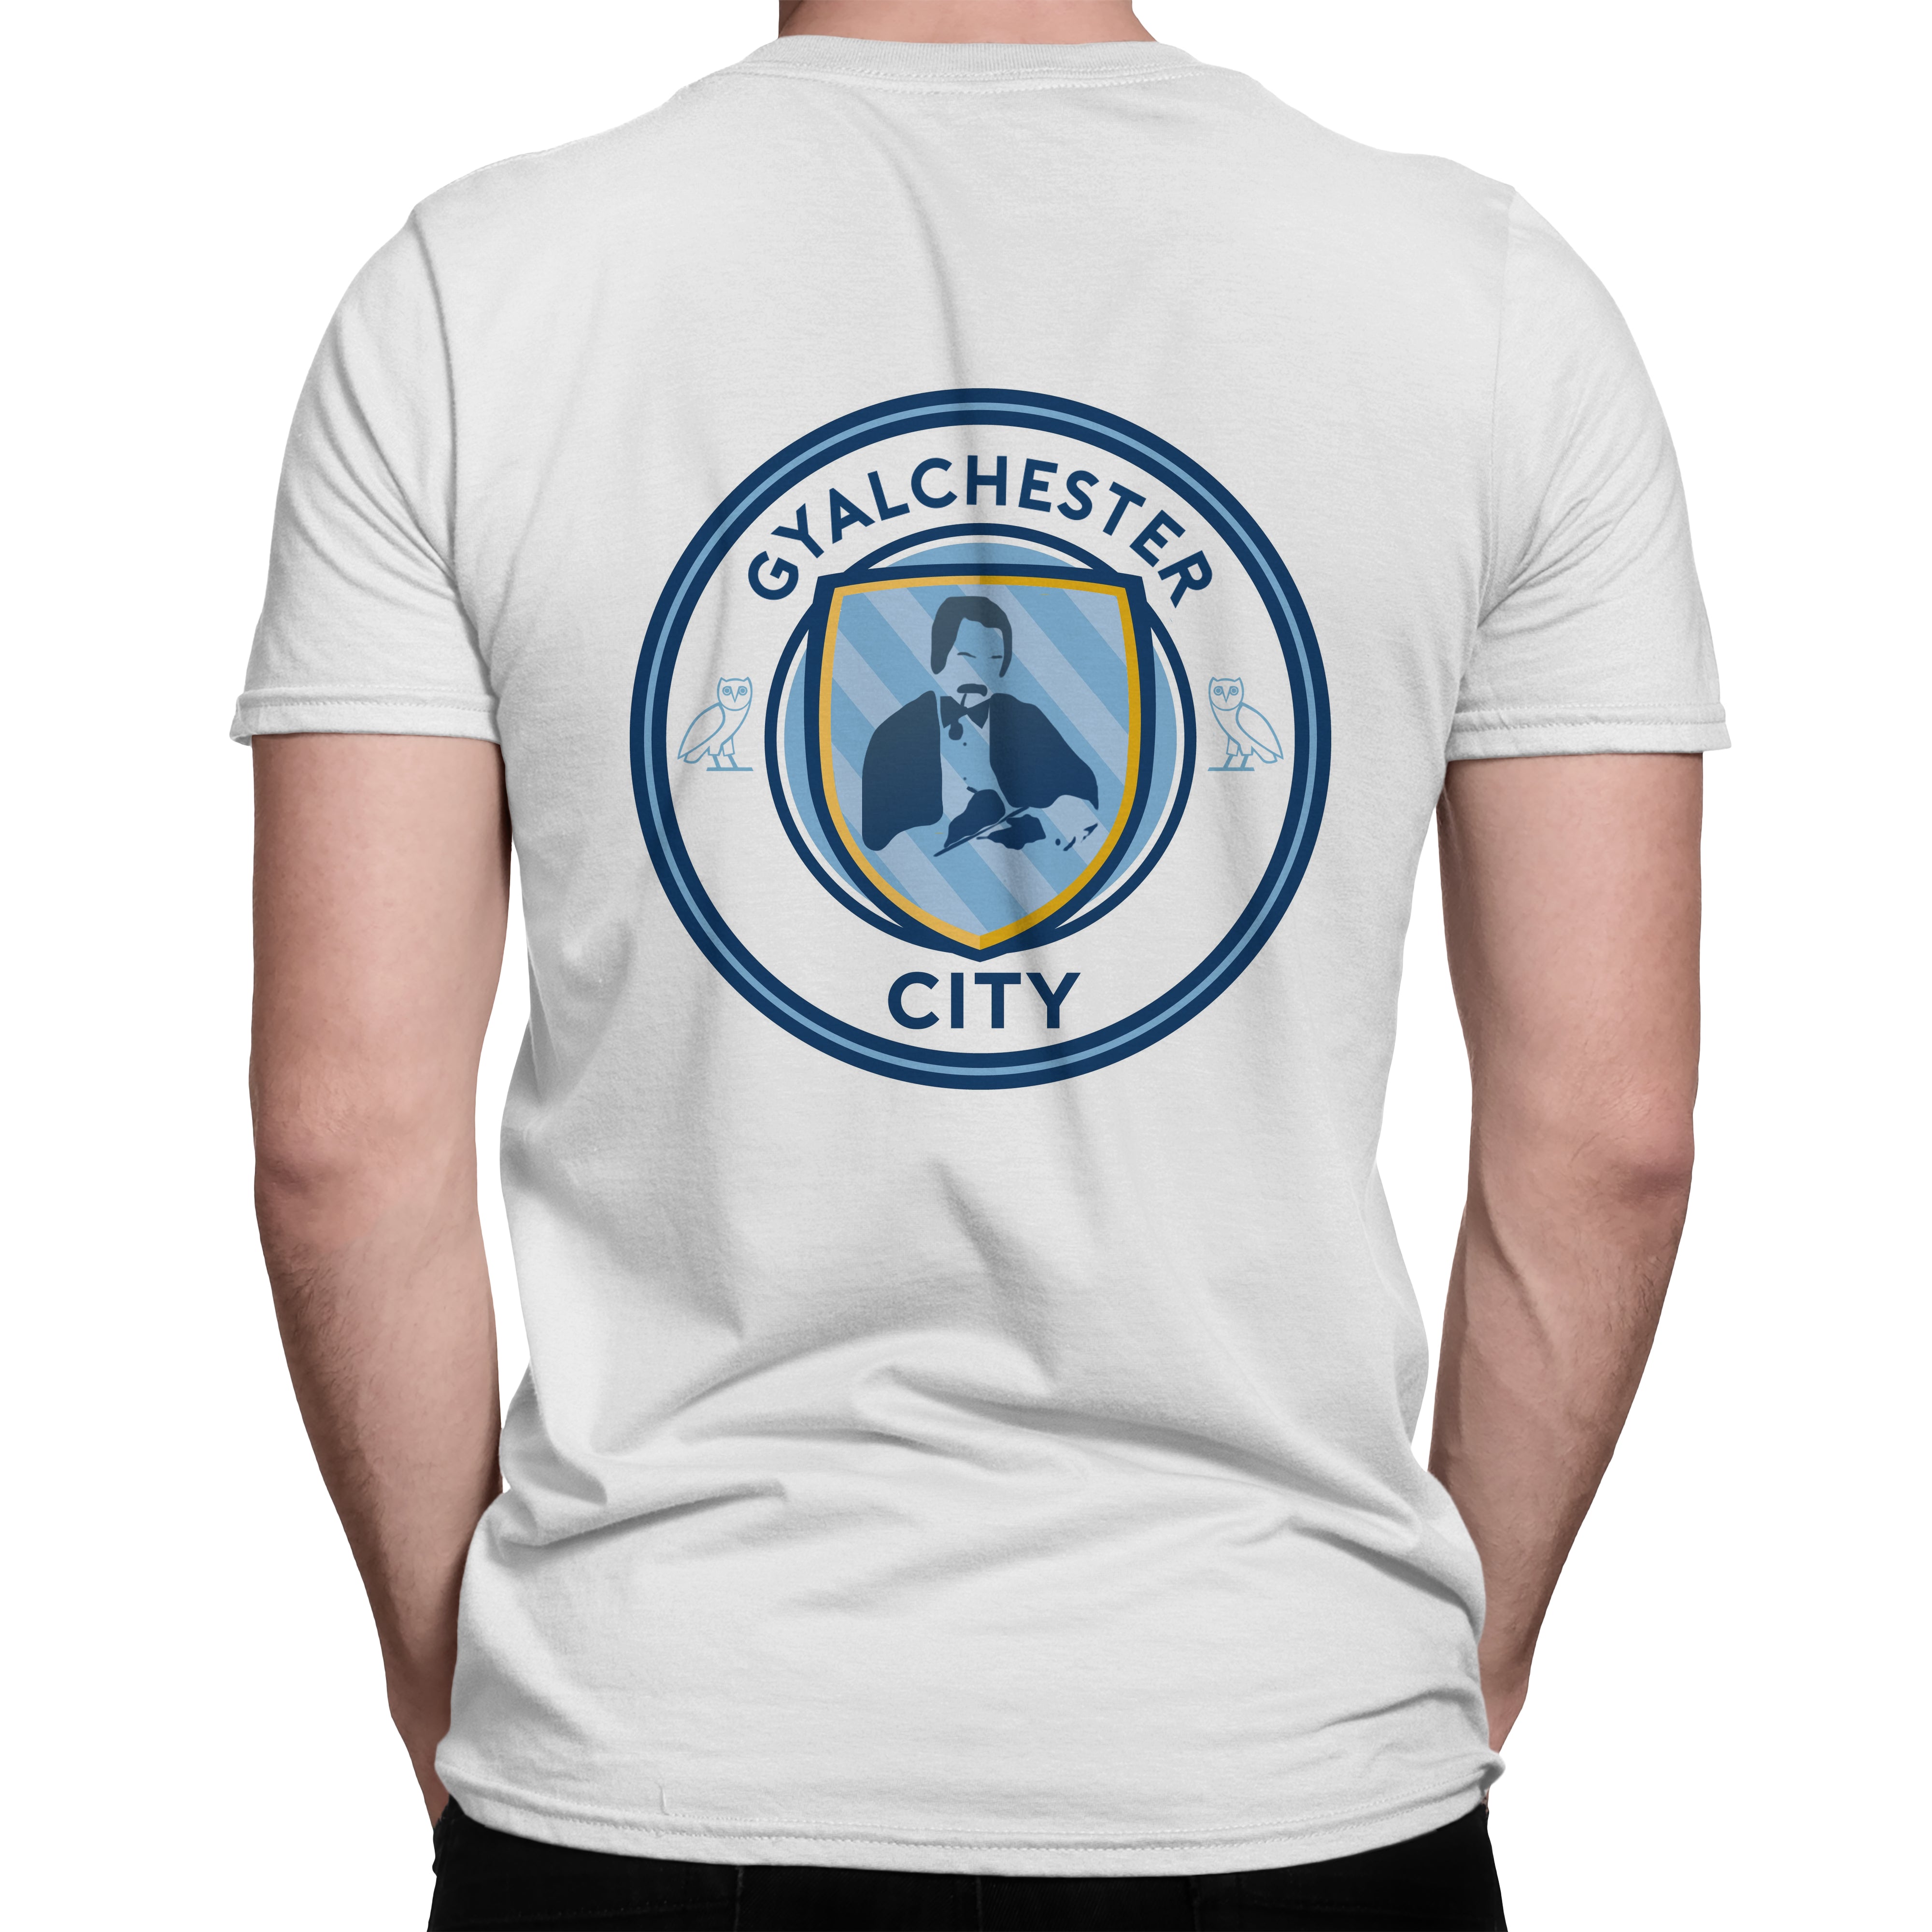 Gyalchester City White T Shirt